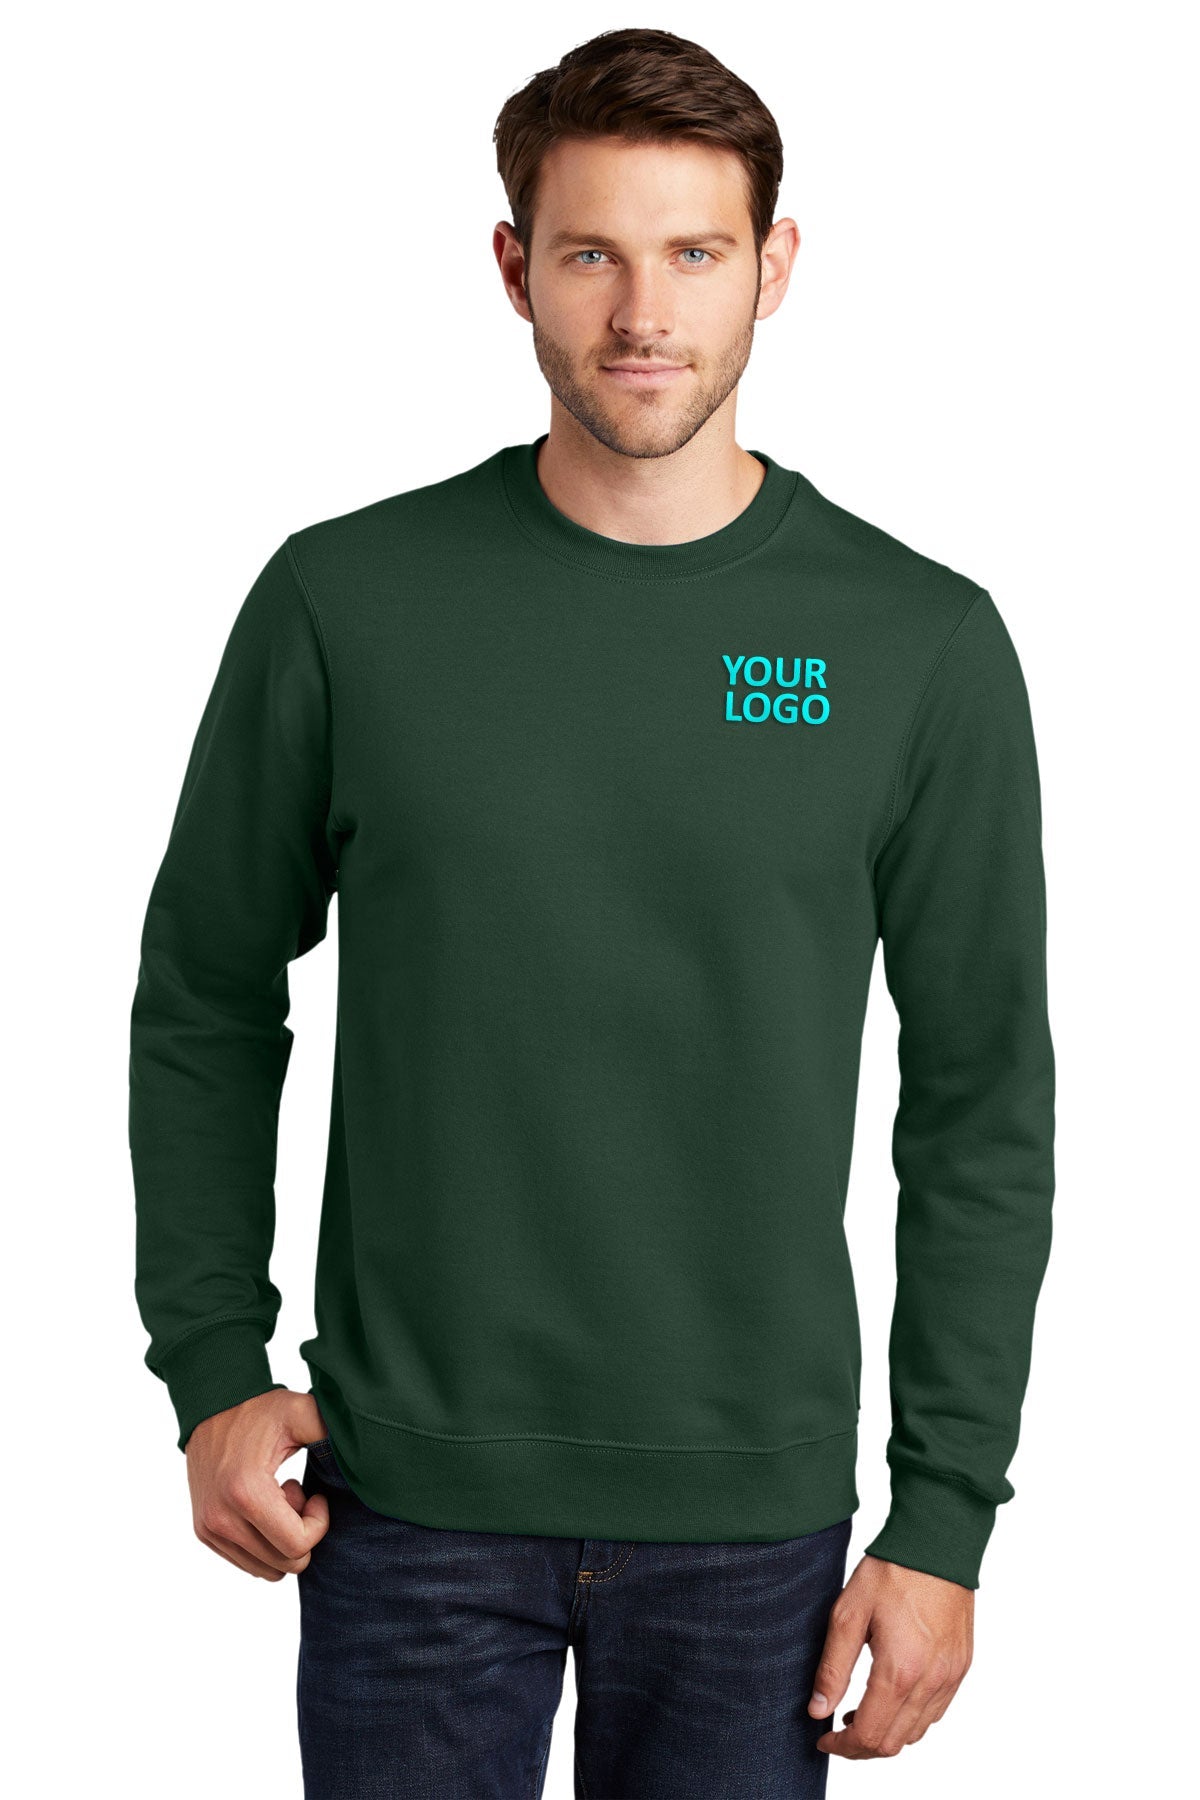 Port & Company Fan Favorite Fleece Customized Sweatshirts, Forest Green